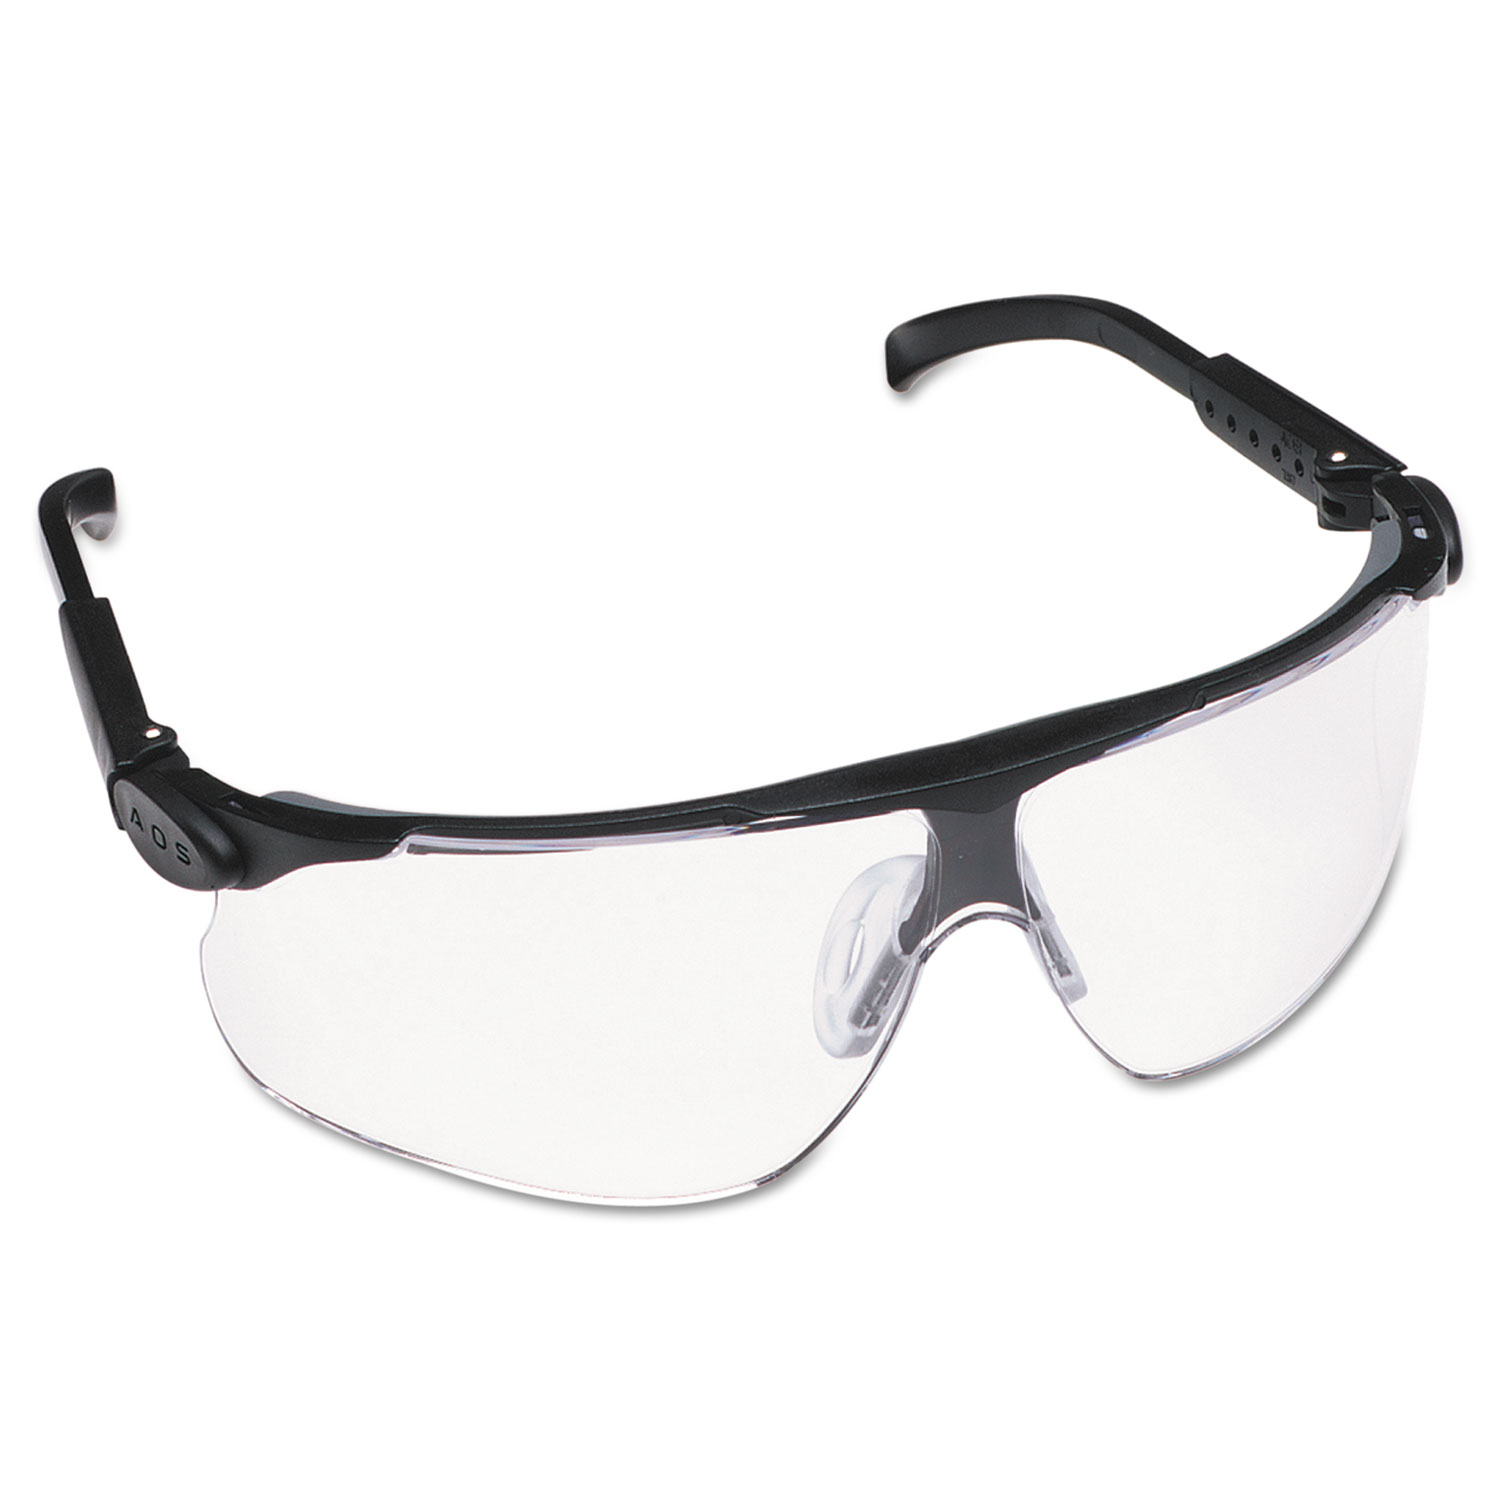 Открытые защитные очки поликарбонат. Очки 3м Peltor. Очки Maxim 3m Peltor/13225-00000p. Очки 3м Maxim. Очки 3м с обтюратором.